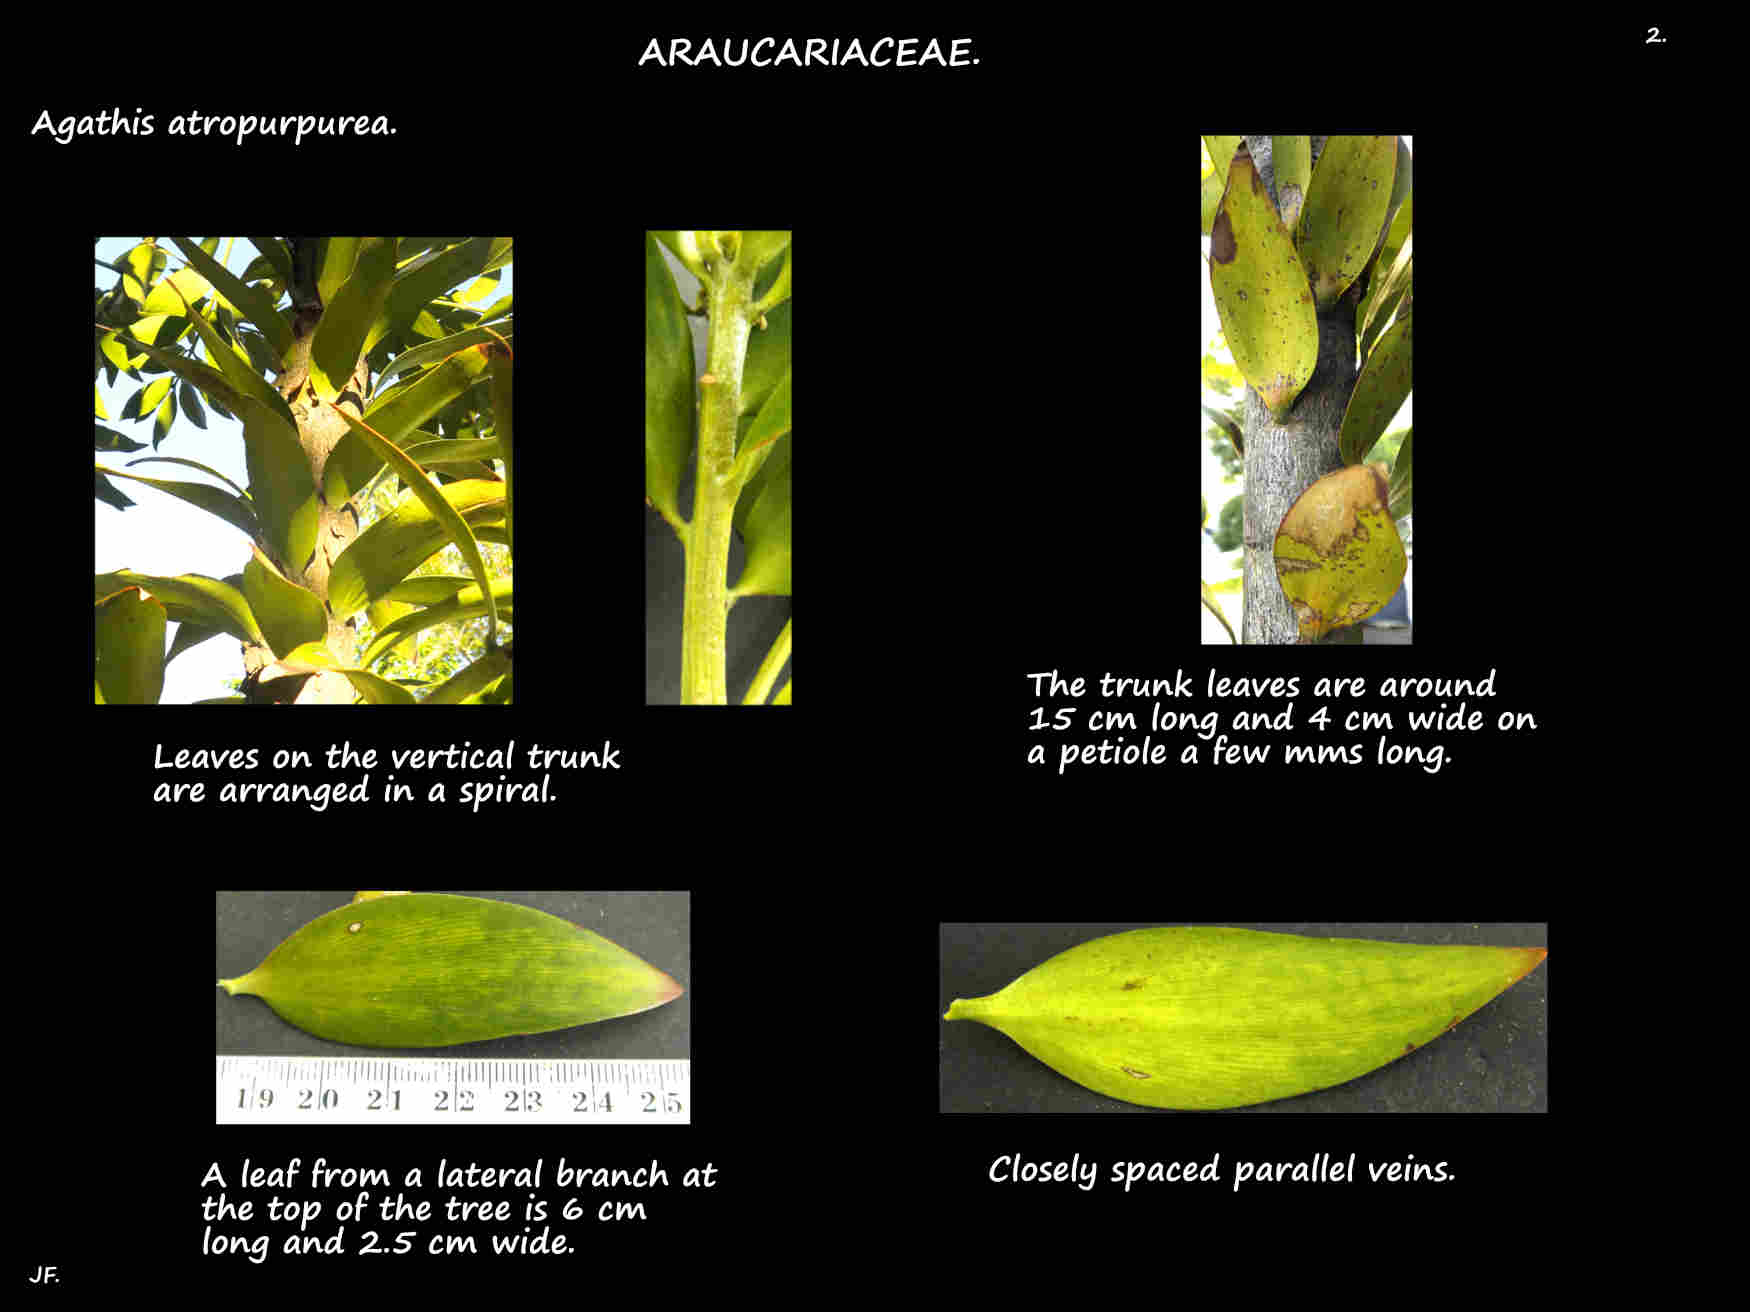 2 Agathis atropurpurea trunk leaves